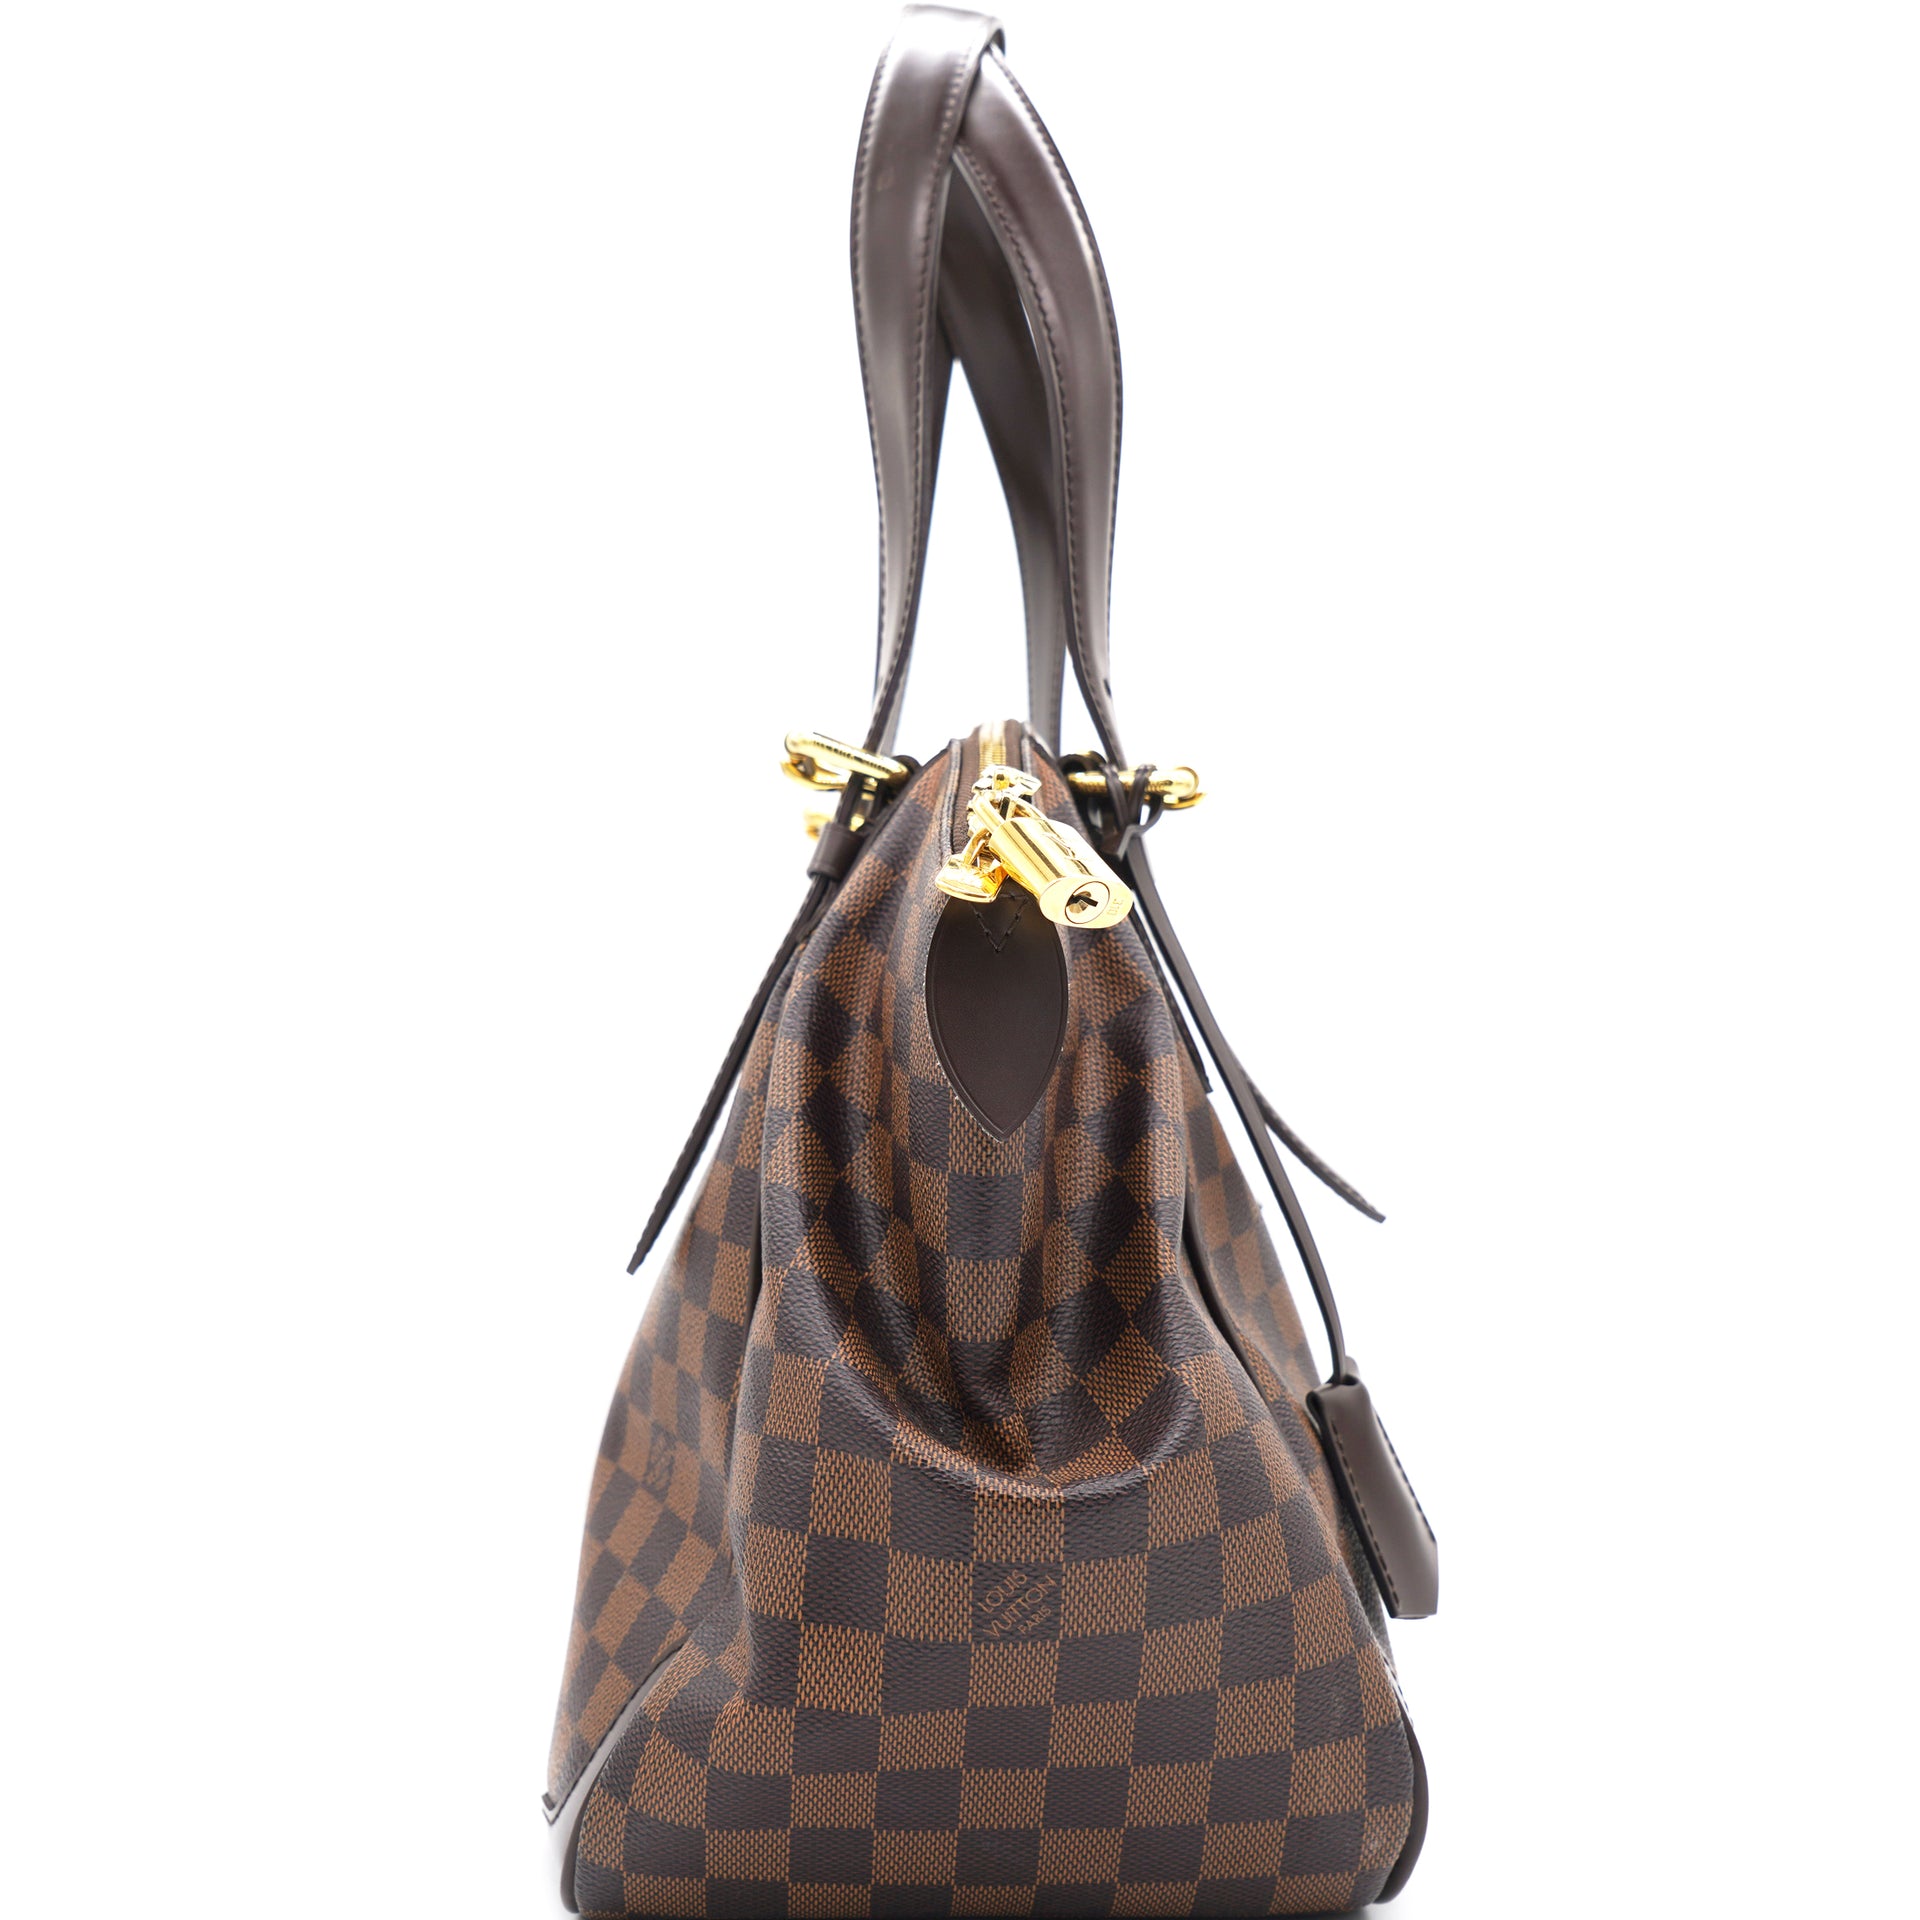 Louis Vuitton Damier Ebene Canvas Leather Verona MM Bag